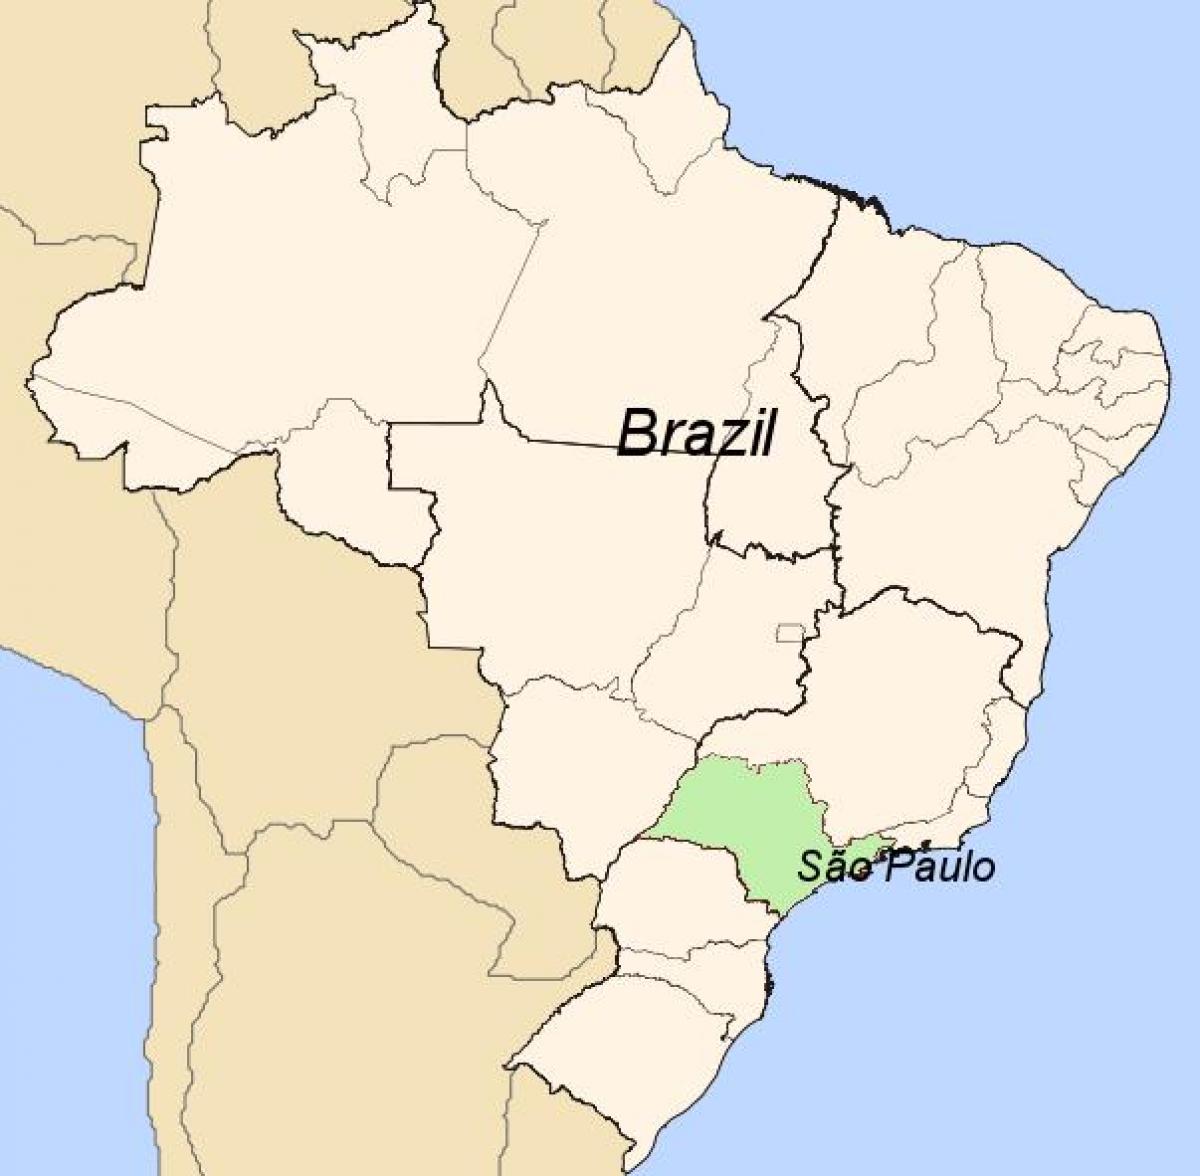 Kart av São Paulo i Brasil